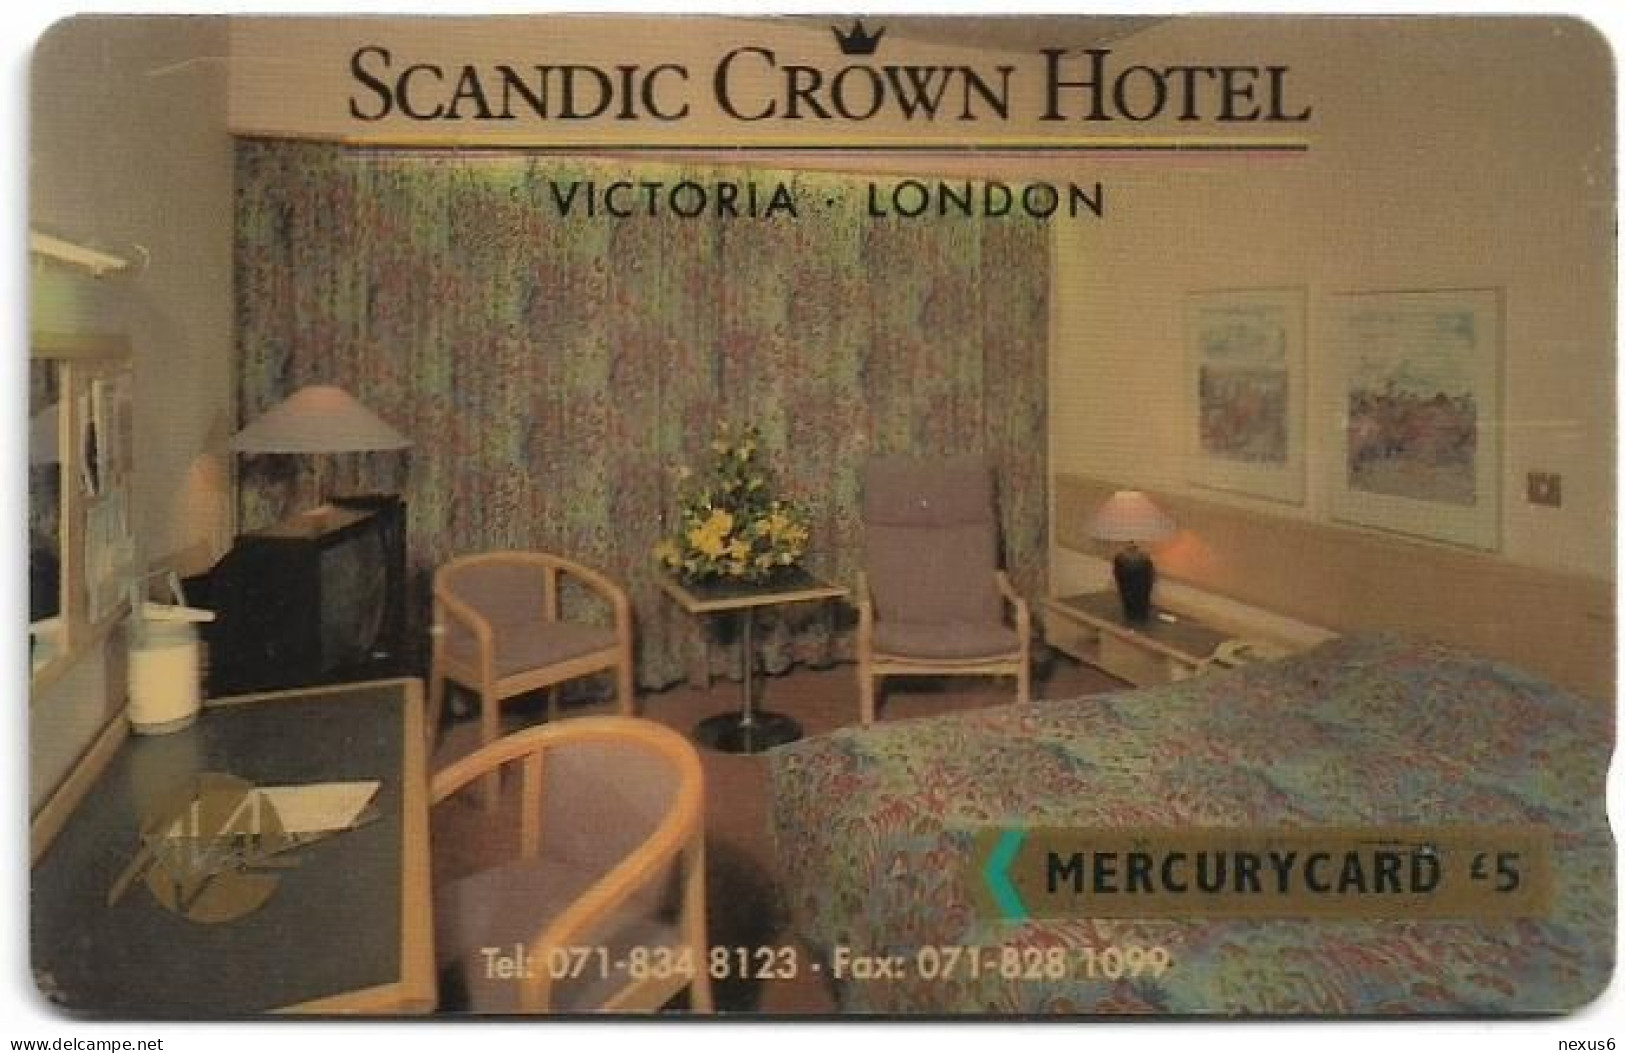 UK (Mercury) - Scandic Hotel (071 834 8123) - 20MERF - MER109 - 5.728ex, Used - Mercury Communications & Paytelco